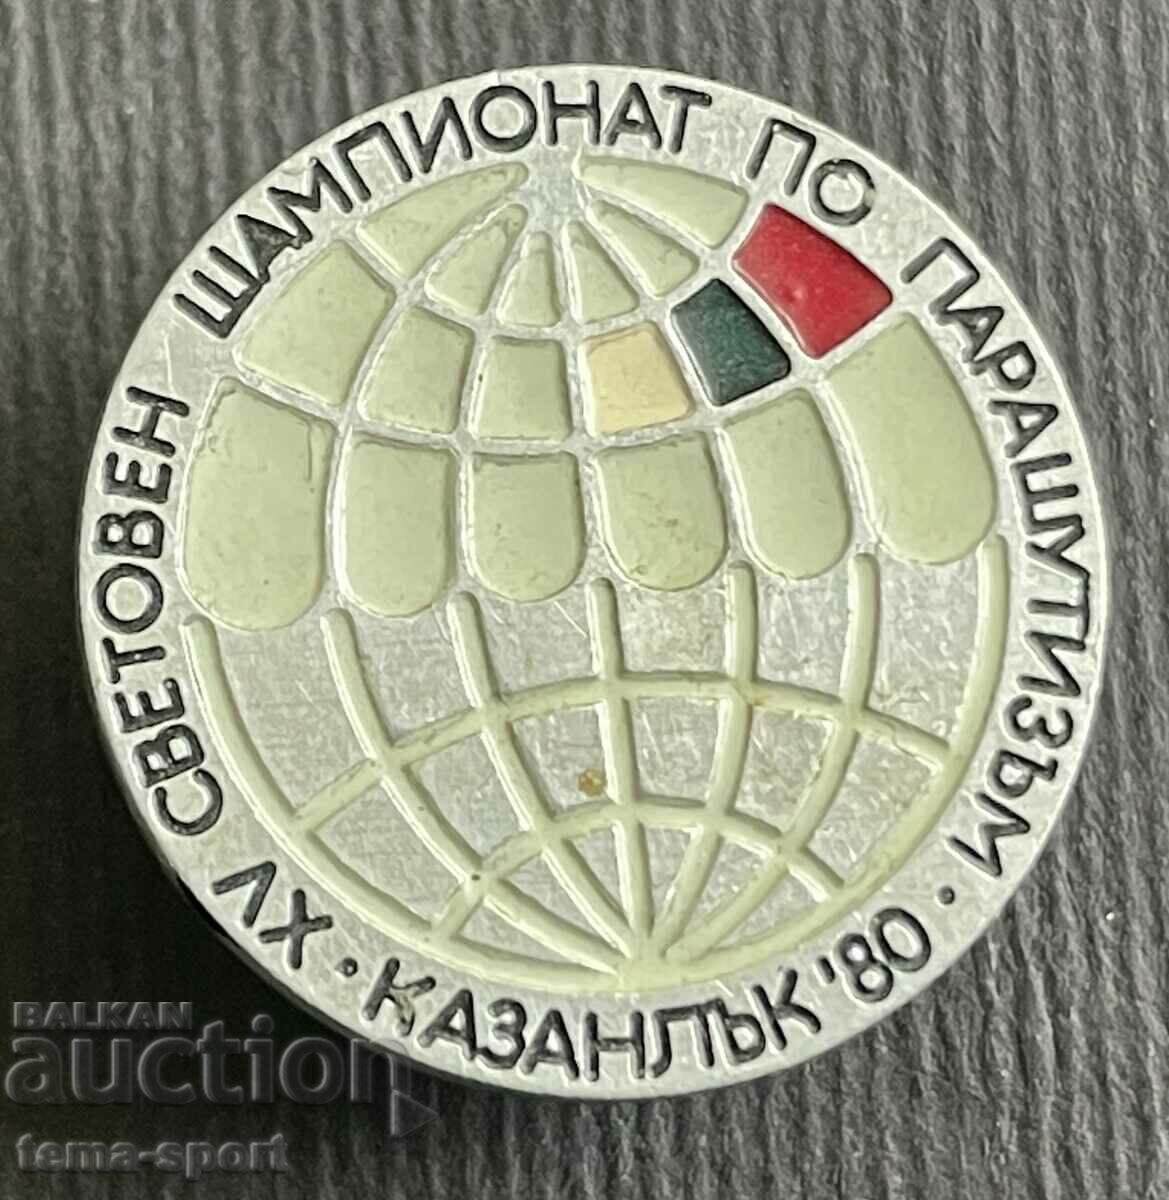 319 Βουλγαρία υπογράφει το Παγκόσμιο Πρωτάθλημα Αλεξιπτωτιστών Kazanlak